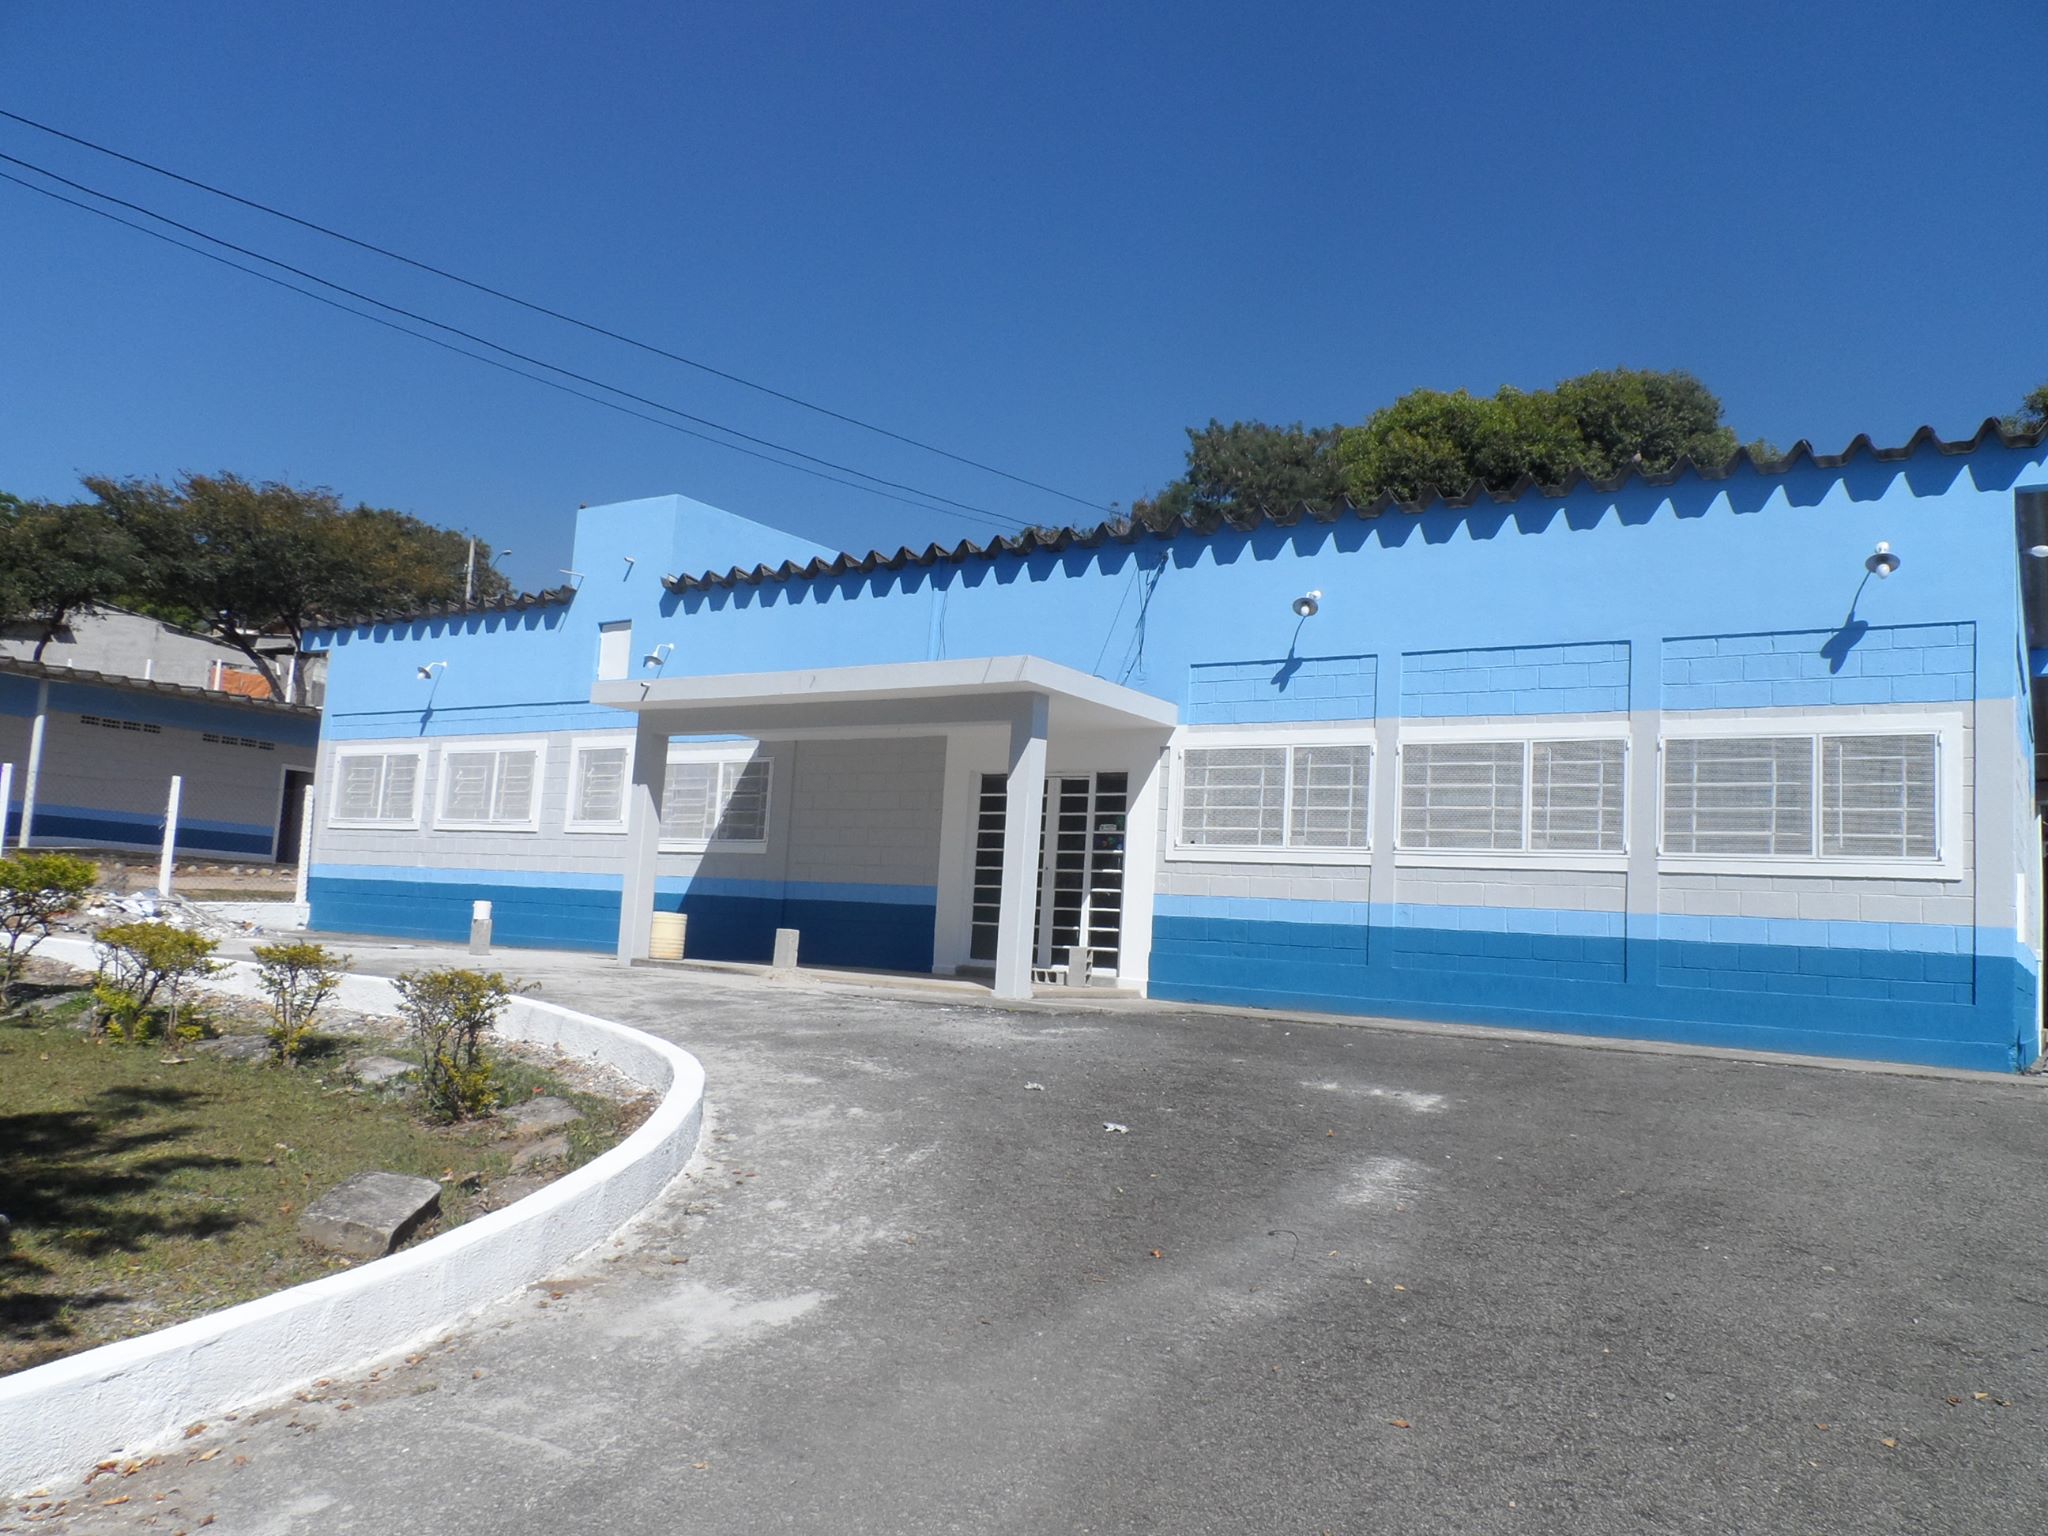 Novo prdio que abrigar a escola municipal do trabalho no Santa Tereza - Foto: Acervo pessoal vereador Digo